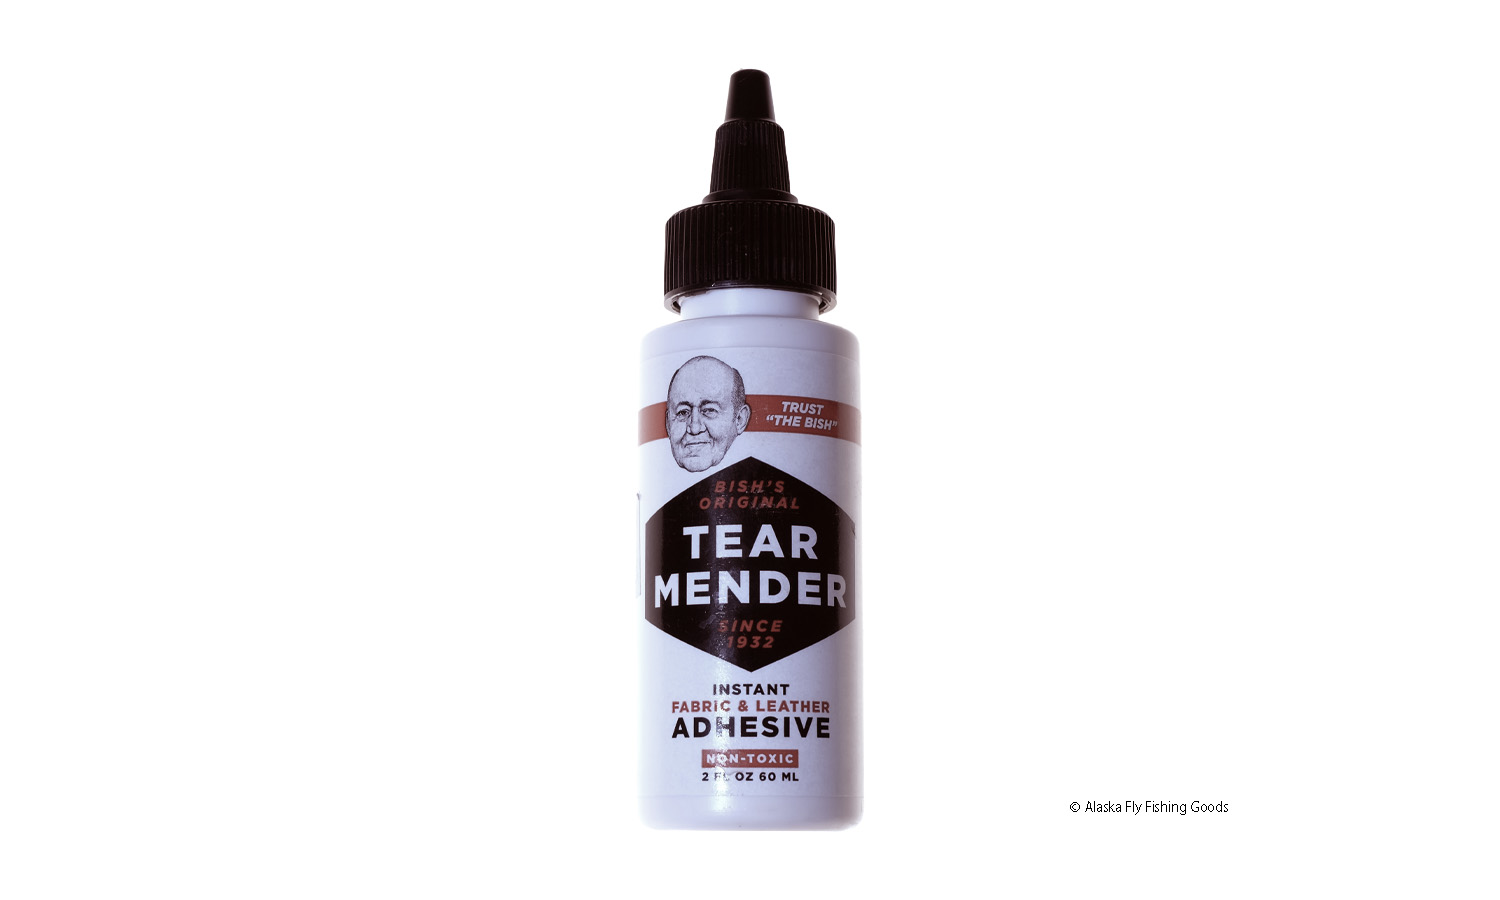 Tear Mender 2 oz.Bottle - Cement & Adhesive - Alaska Fly Fishing Goods